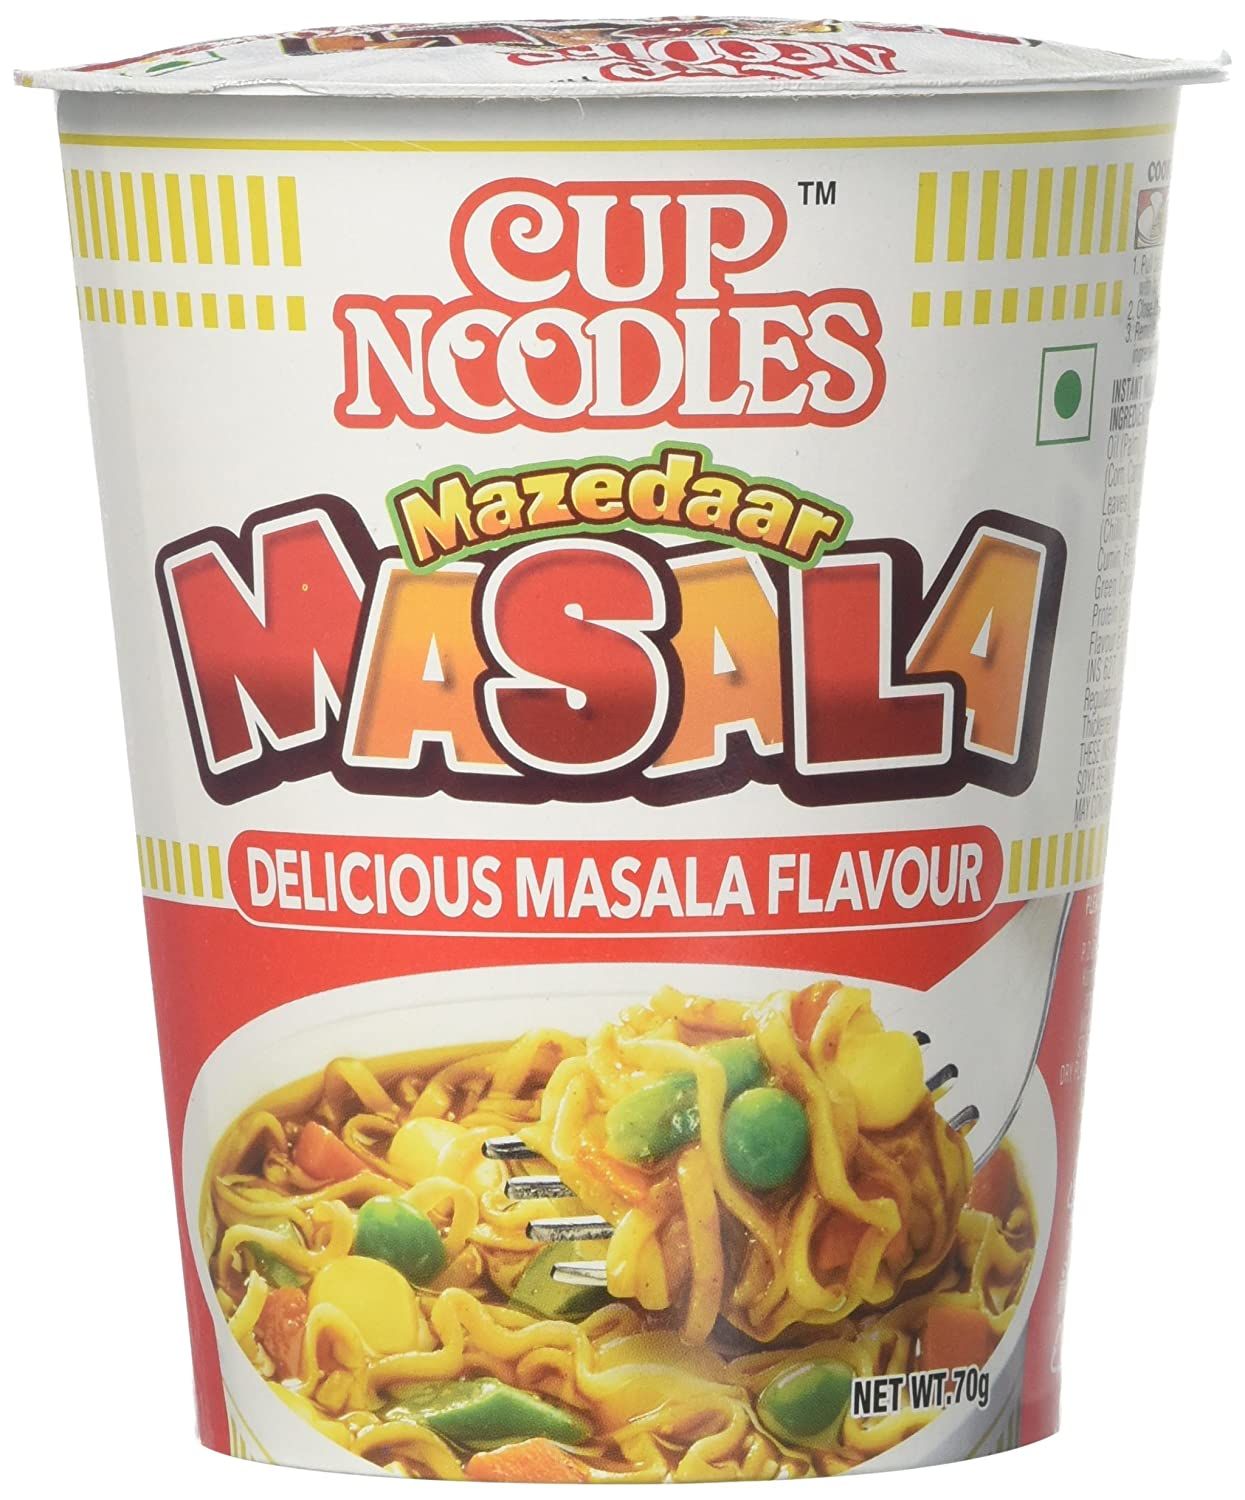 Cup Noodles Mazedar Masala Image